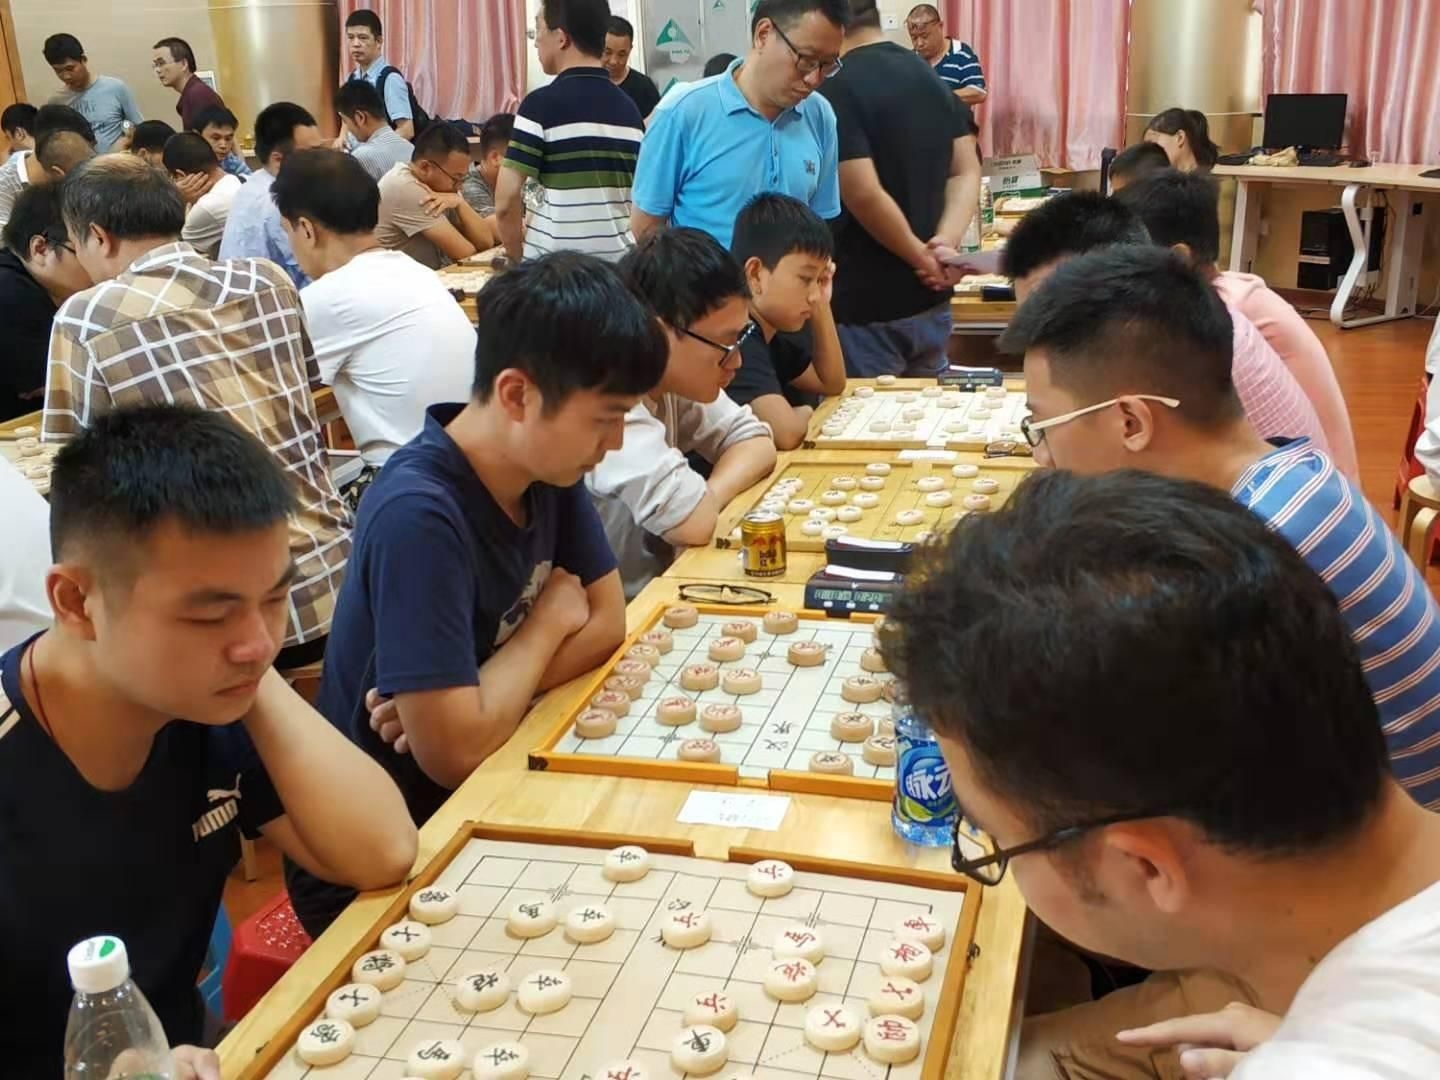 “中国体育彩票杯”2019年深圳市象棋团体公开赛落下帷幕。